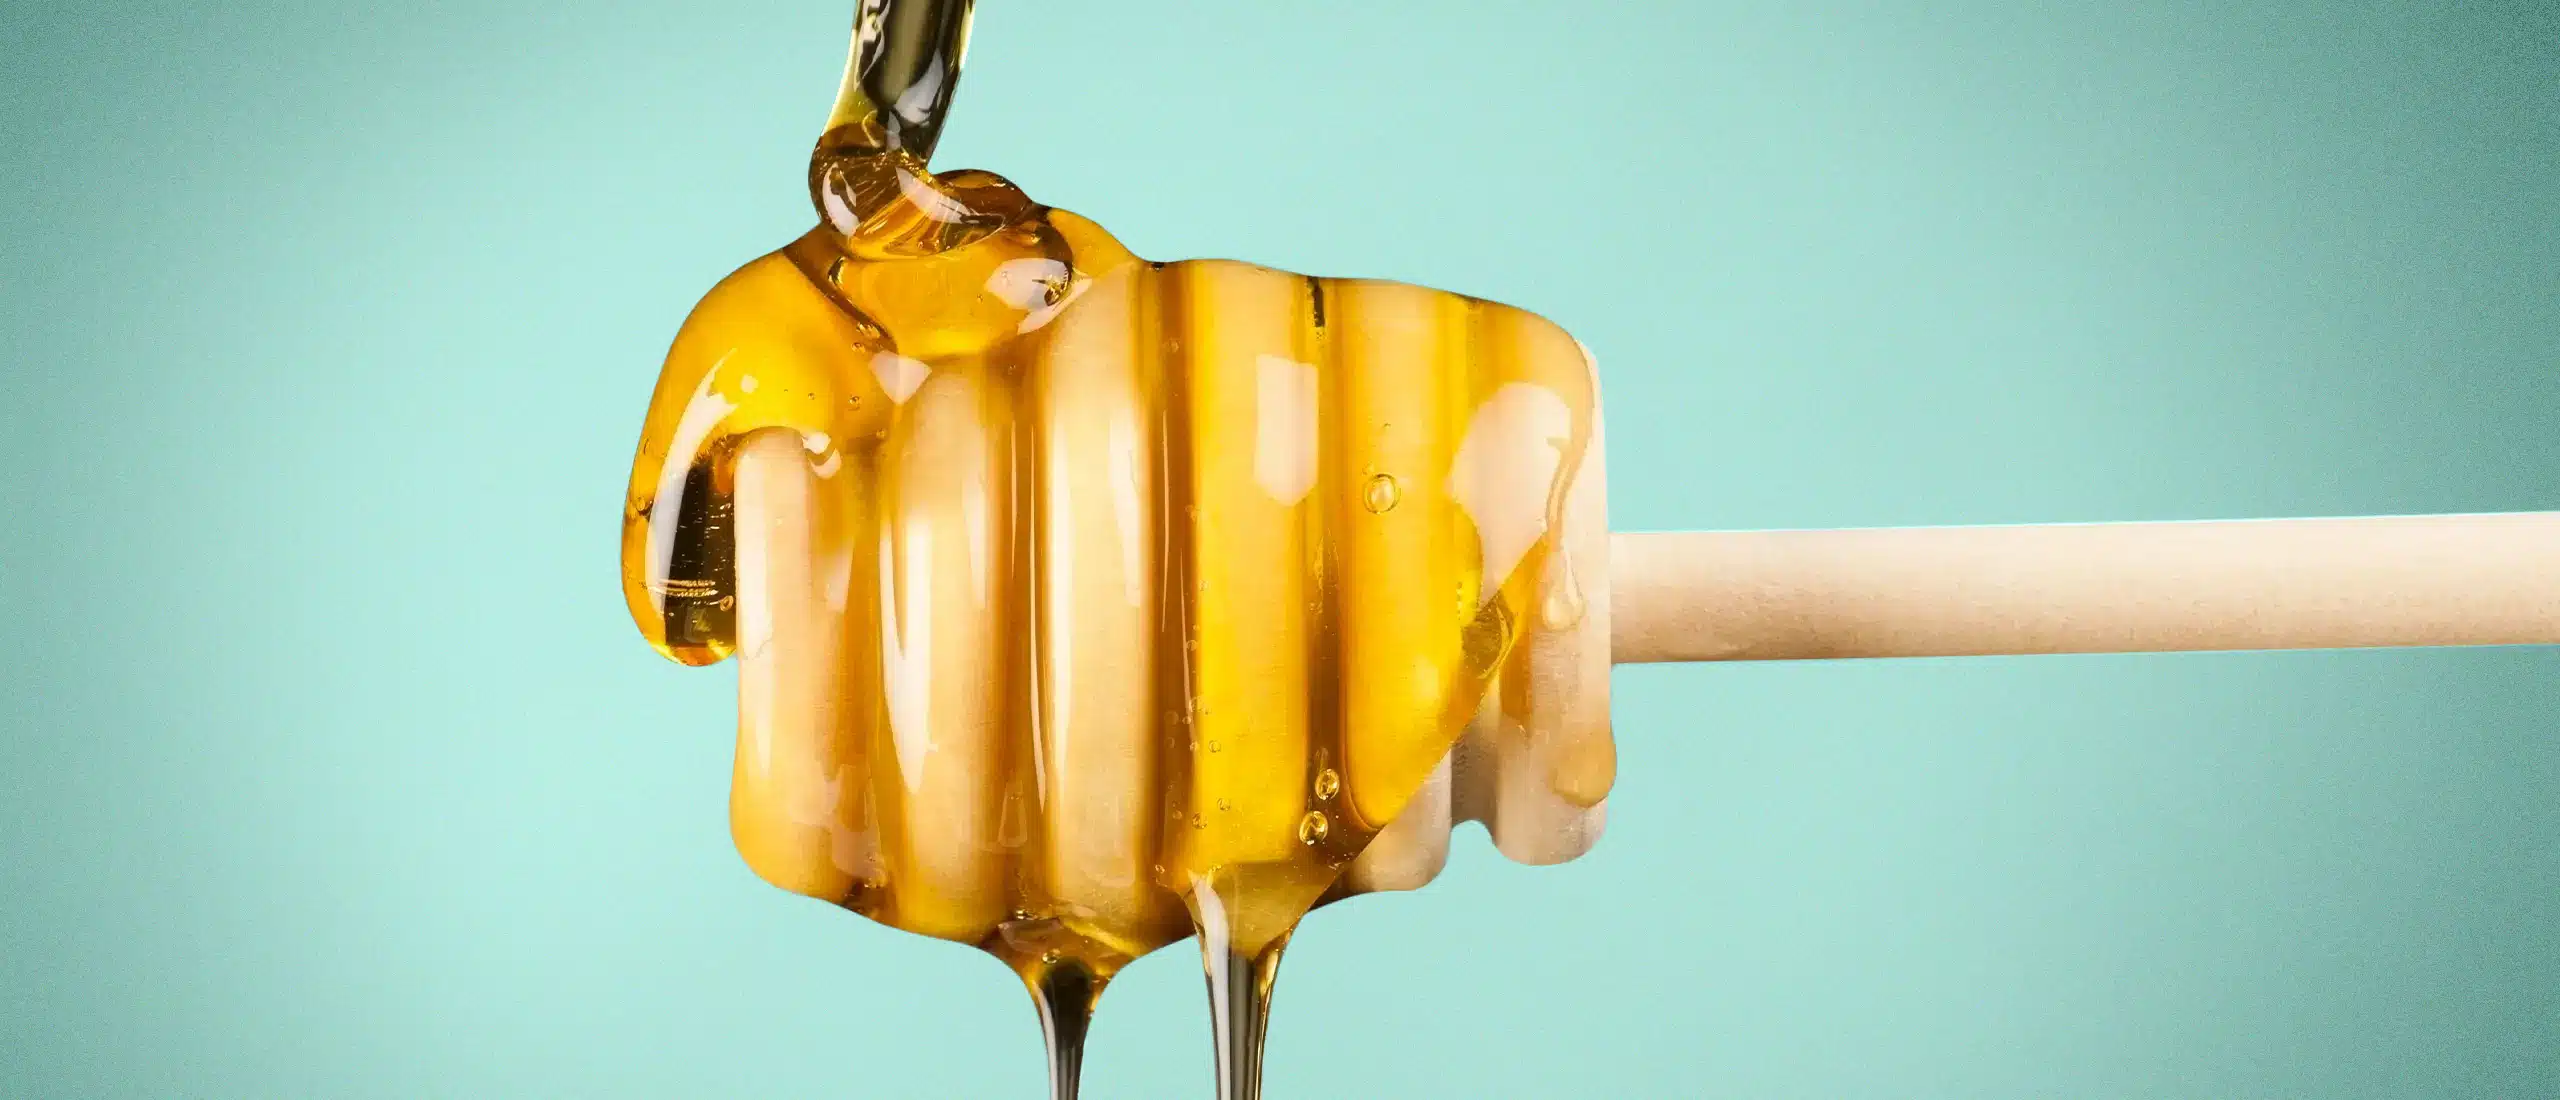 ETUMAX Royal Honey: World Famous, 100% Authentic